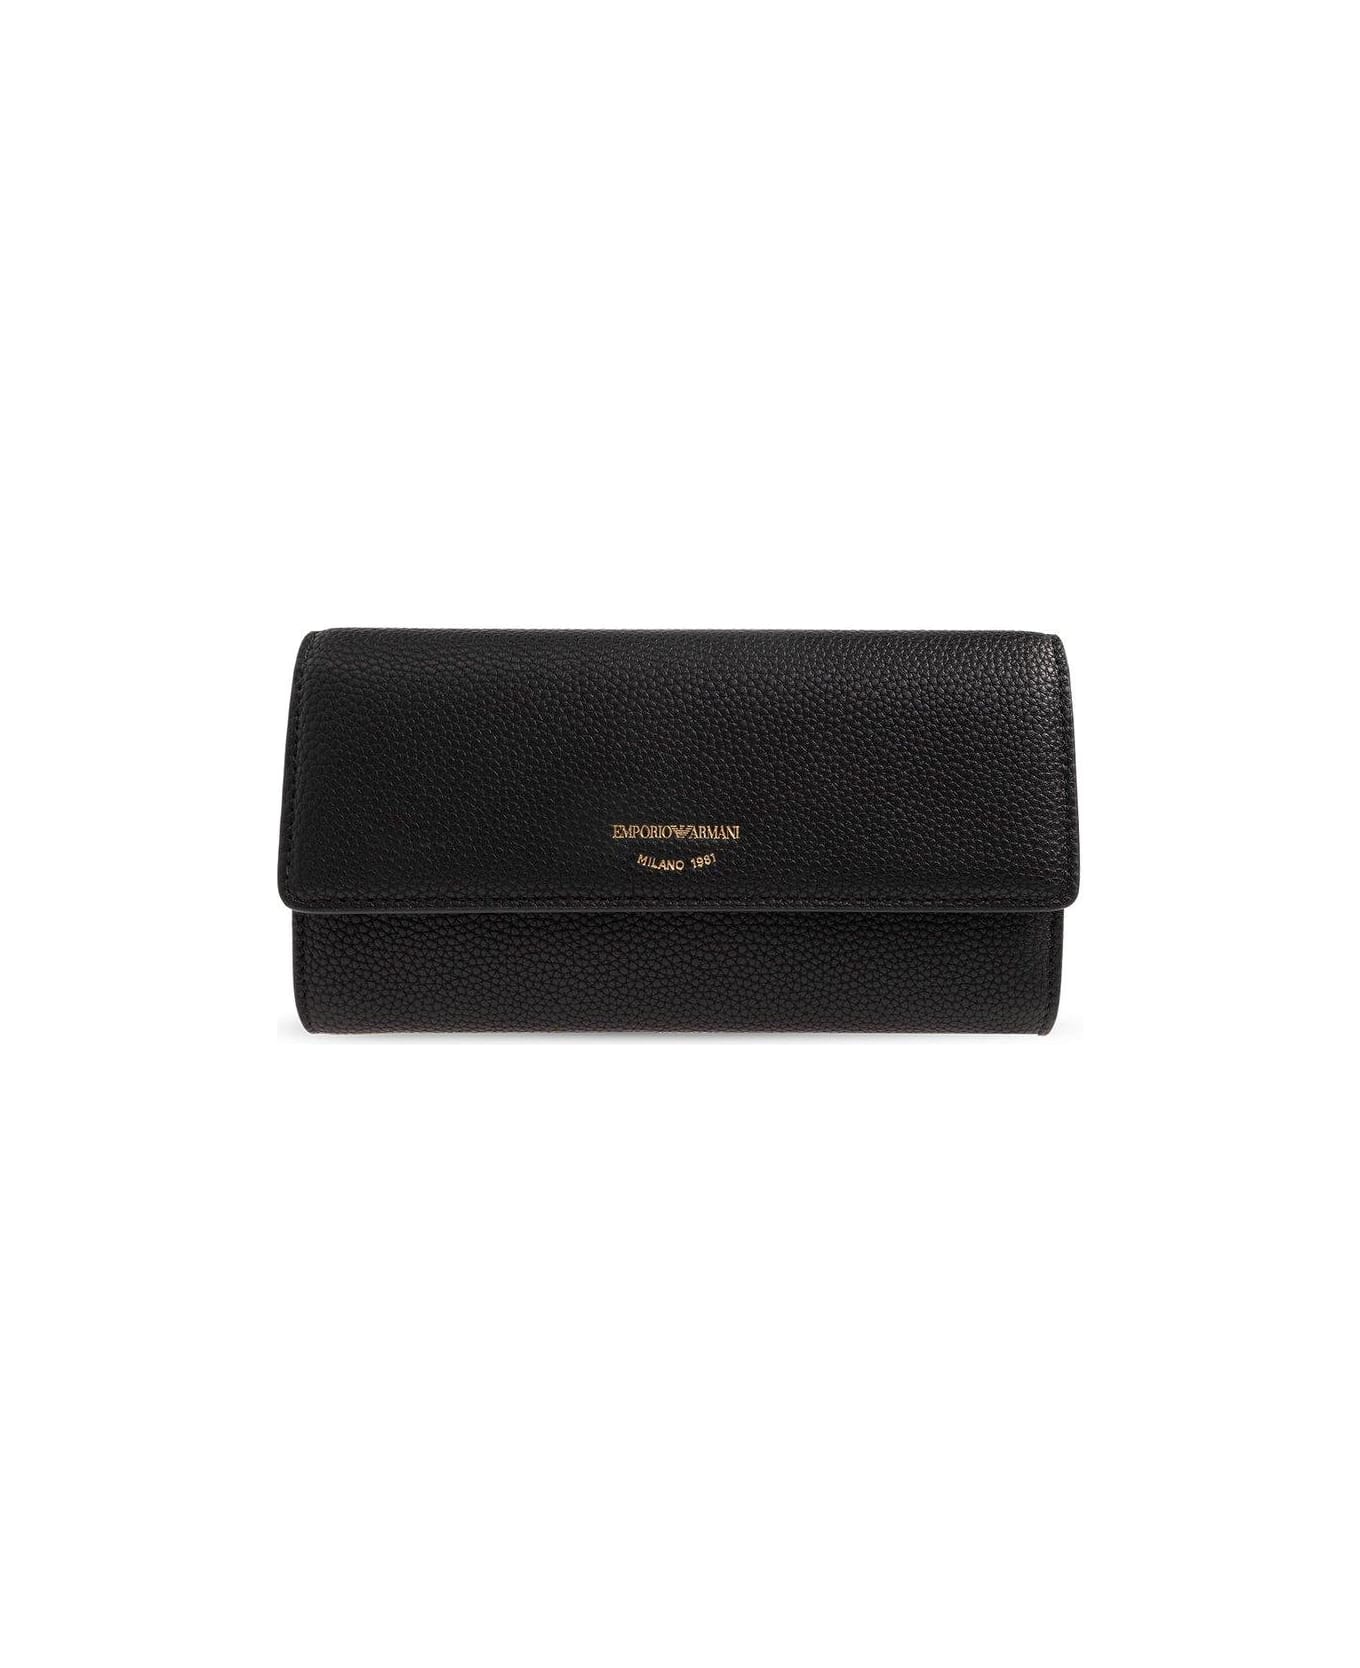 Emporio Armani Wallet With Logo - Black 財布